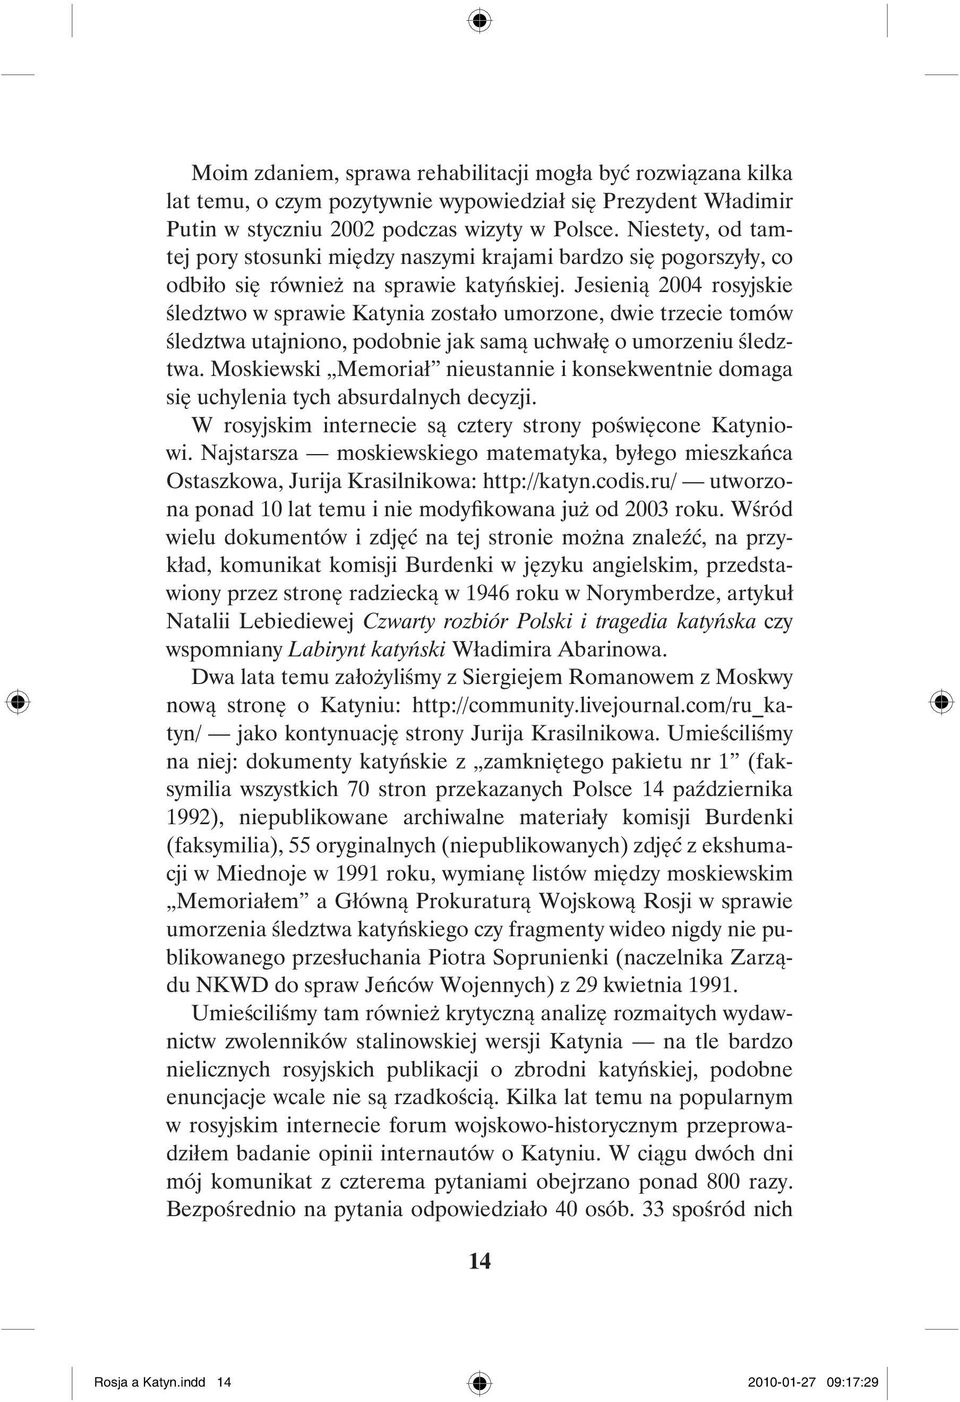 Jesienią 2004 rosyjskie śledztwo w sprawie Katynia zostało umorzone, dwie trzecie tomów śledztwa utajniono, podobnie jak samą uchwałę o umorzeniu śledztwa.